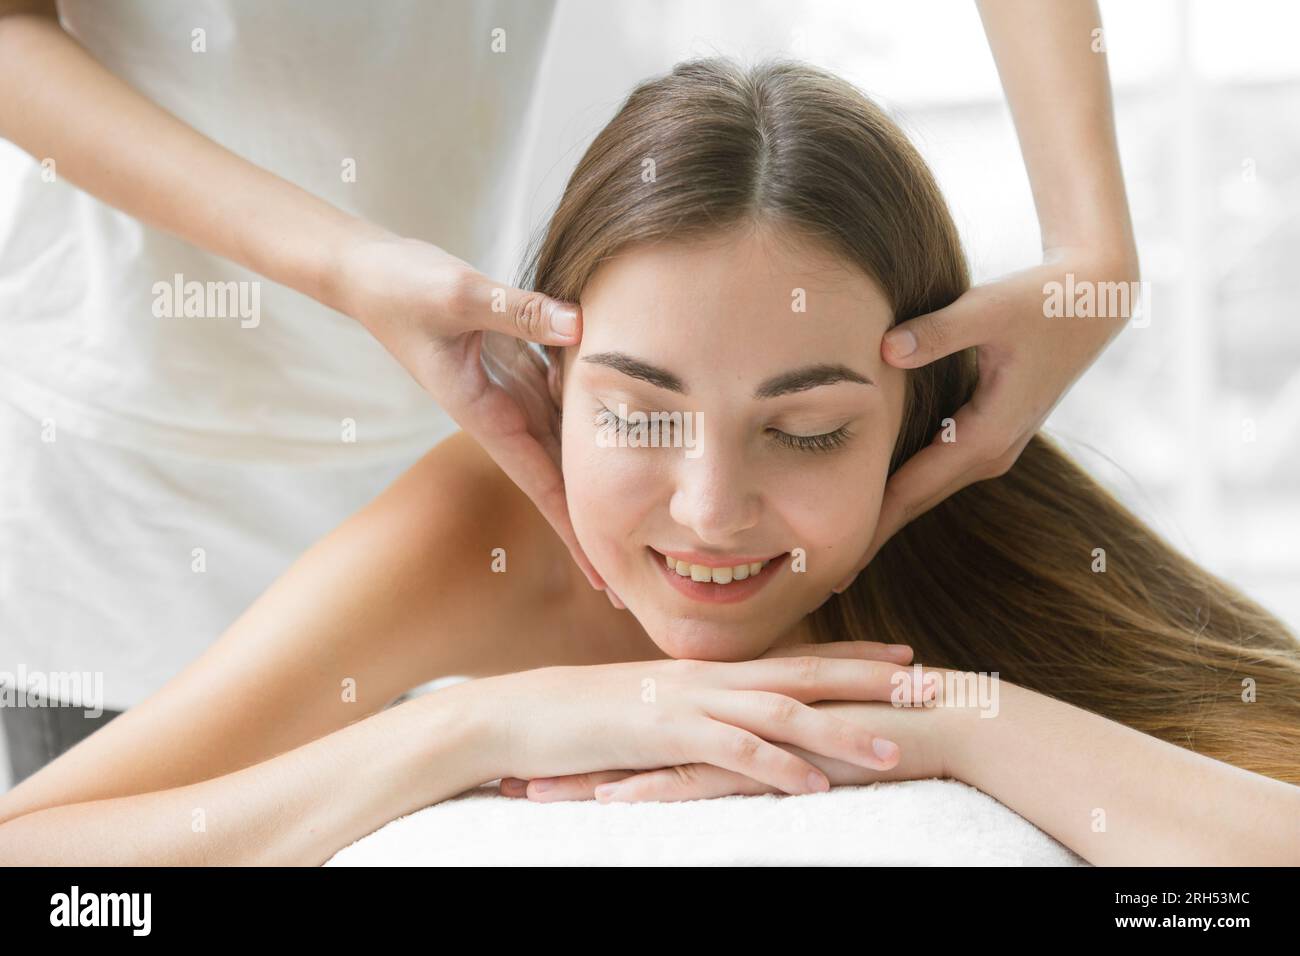 Gesundheitspflege Beauty Frauen Kopfmassage im Spa Schmerzlinderung Entspannen Sie sich für einen gesunden Lebensstil. Schöne Frau Körperpflegebehandlung Nahaufnahme Gesicht. Stockfoto